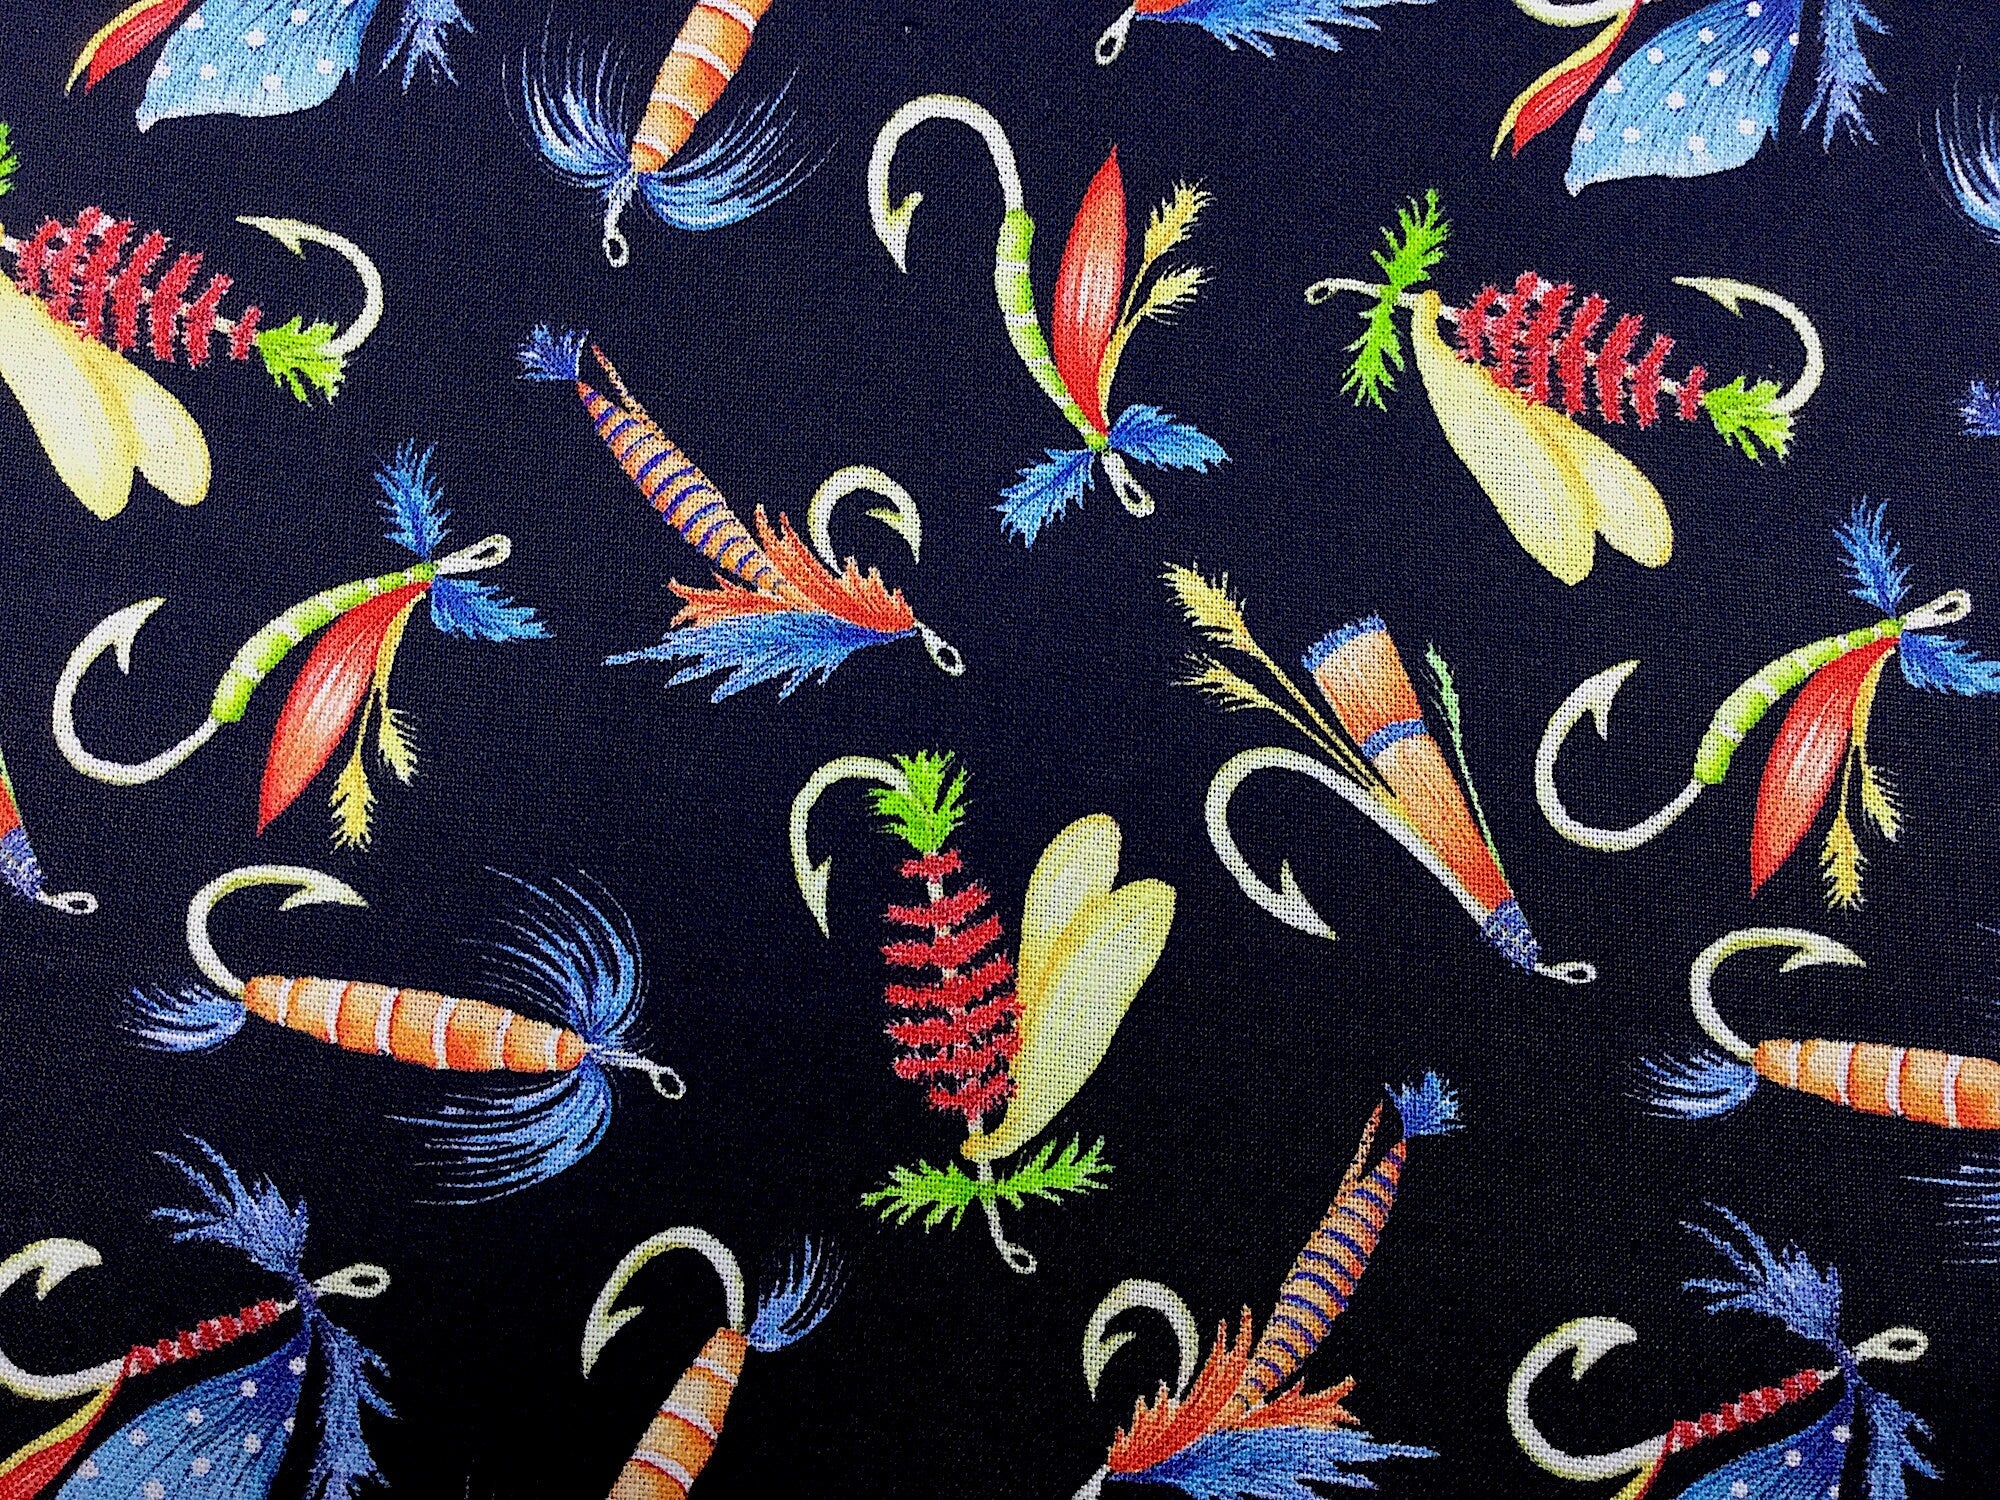 Keep it Reel - Fly Fishing Fabric - Fishing Fabric - Cotton Fabric Quilting Fabric - Kanvas Studio - FISH-07